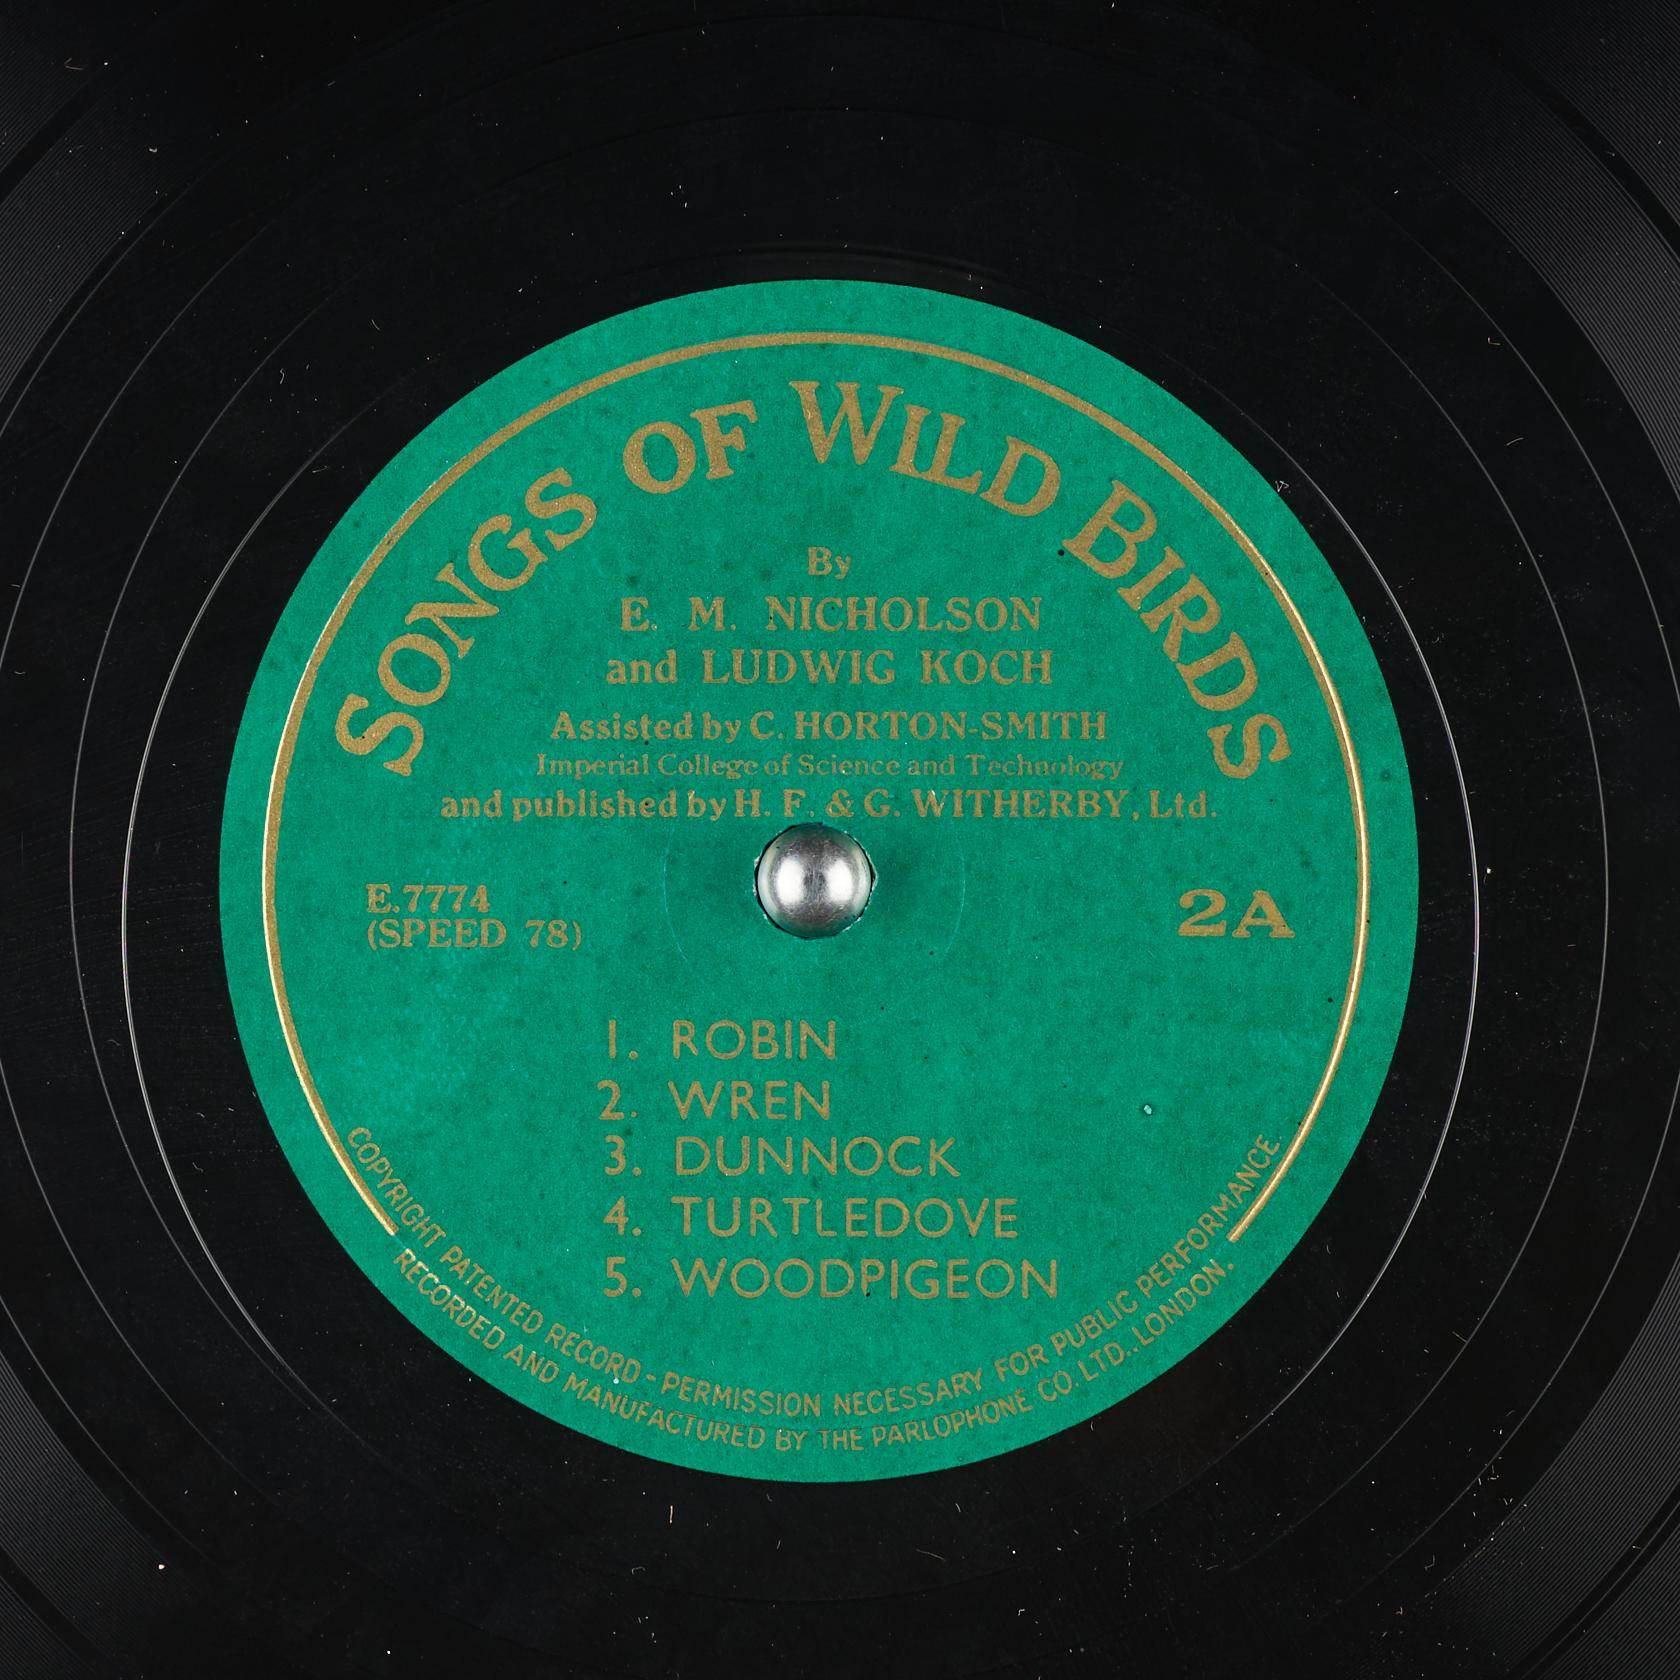 Songs of wild birds. Disc 2, Side A (E.7774)